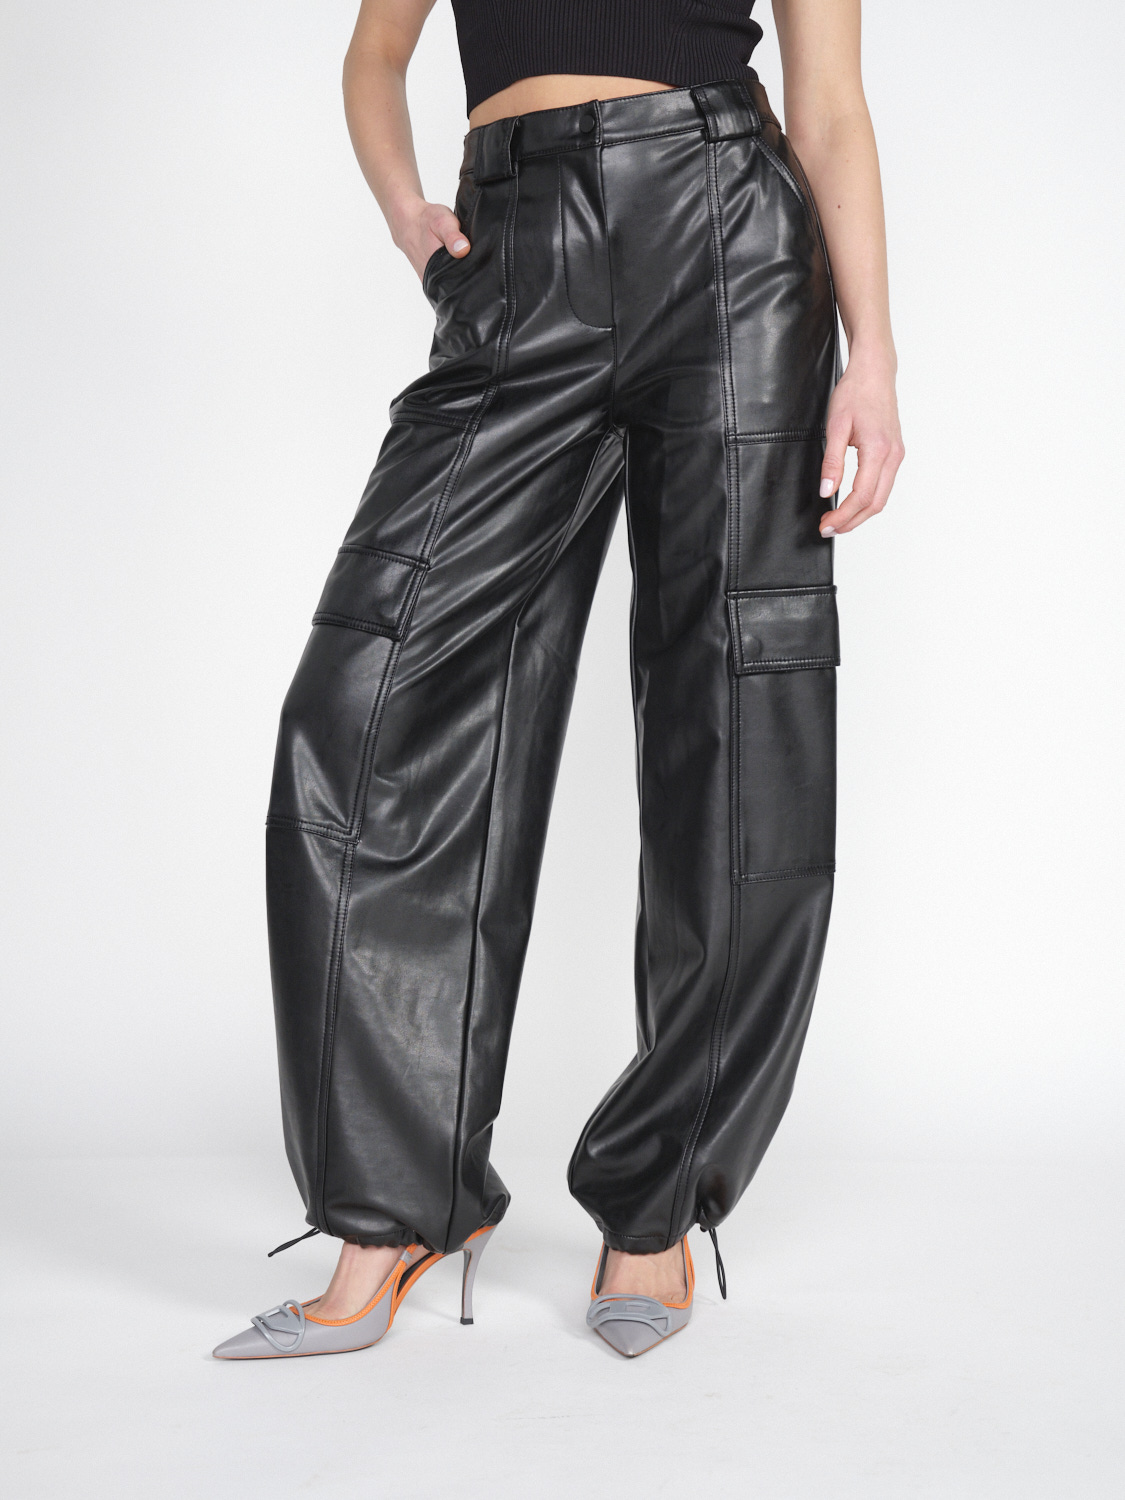 Simkhai Sofia – cargo trousers in fake leather  black 36